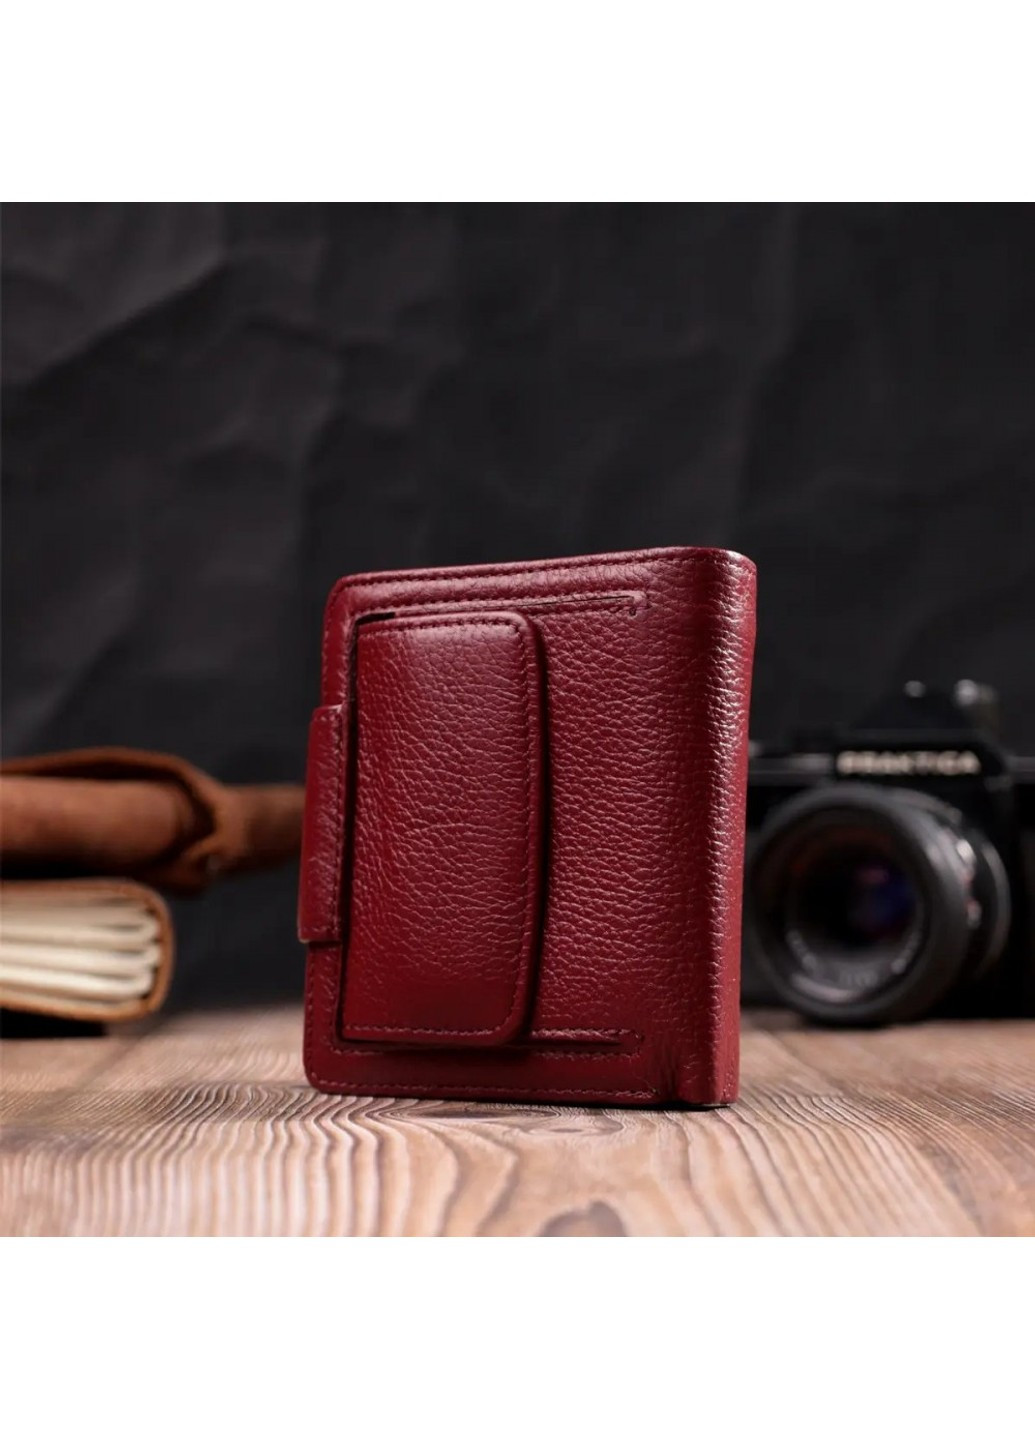 Шкіряний жіночий гаманець ST Leather 22452 ST Leather Accessories (277977949)